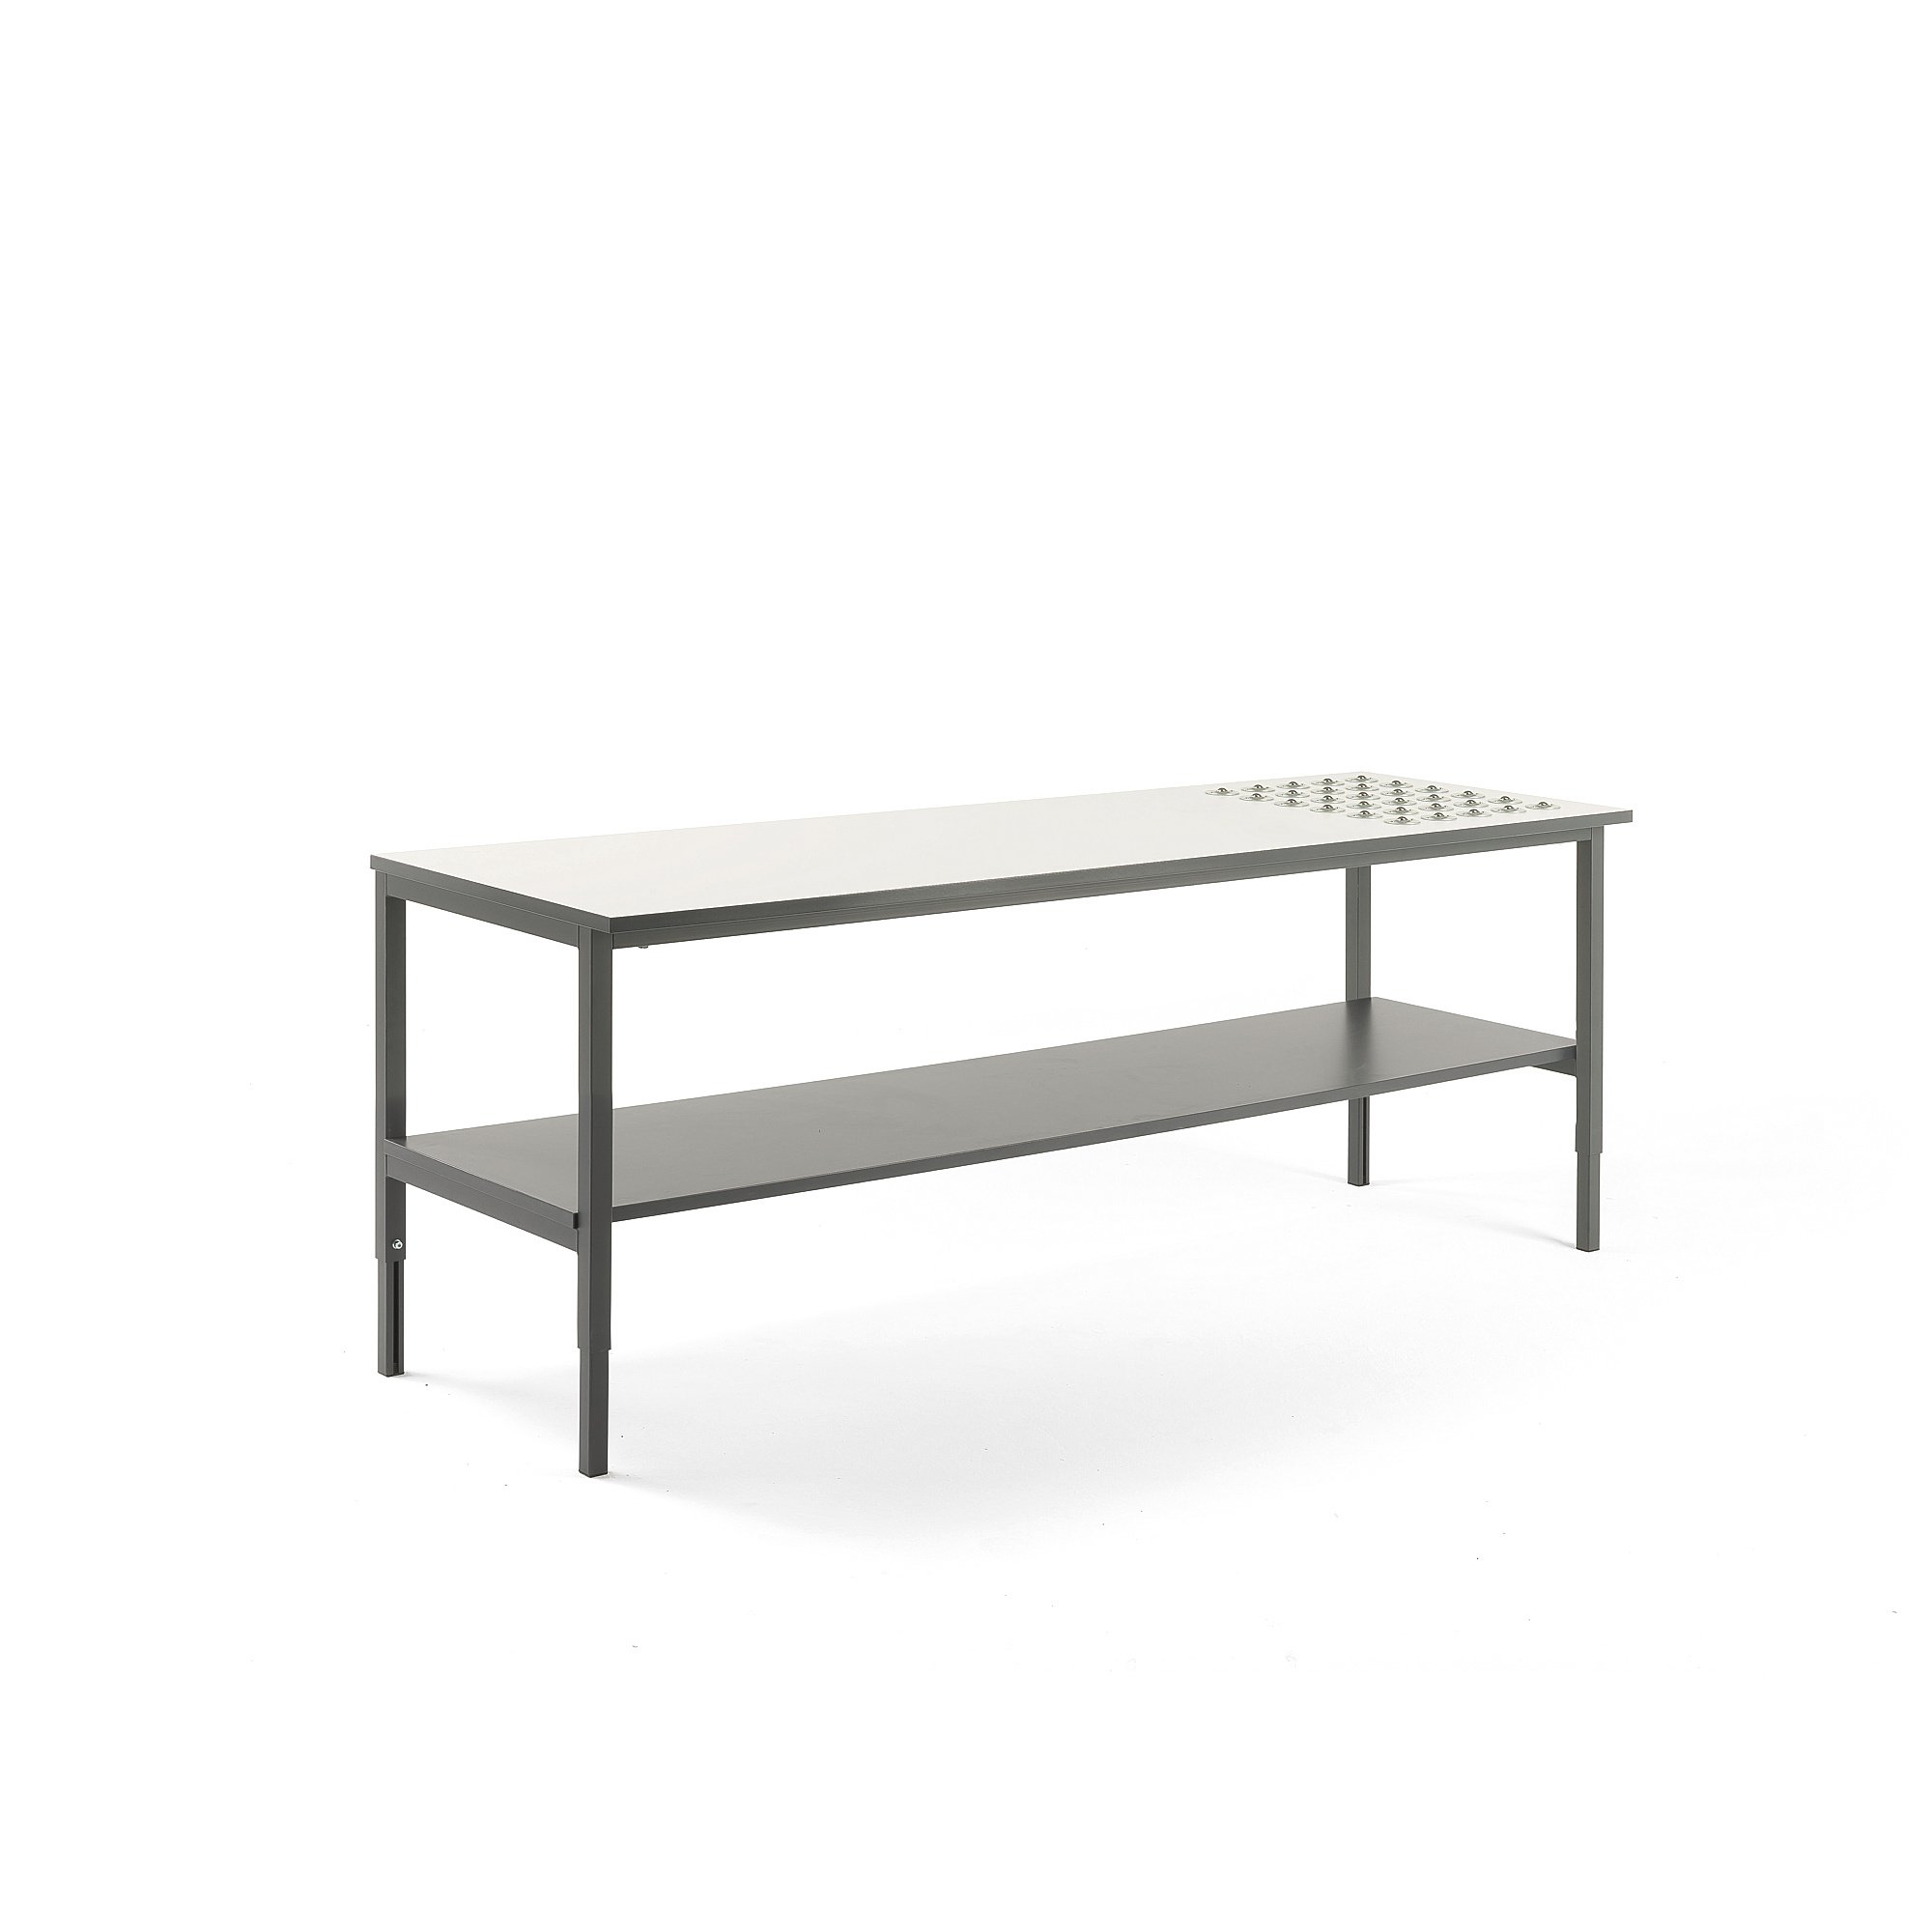 Pracovní stůl CARGO, s kuličkami a spodní policí, 2000x750 mm, bílá deska, šedý